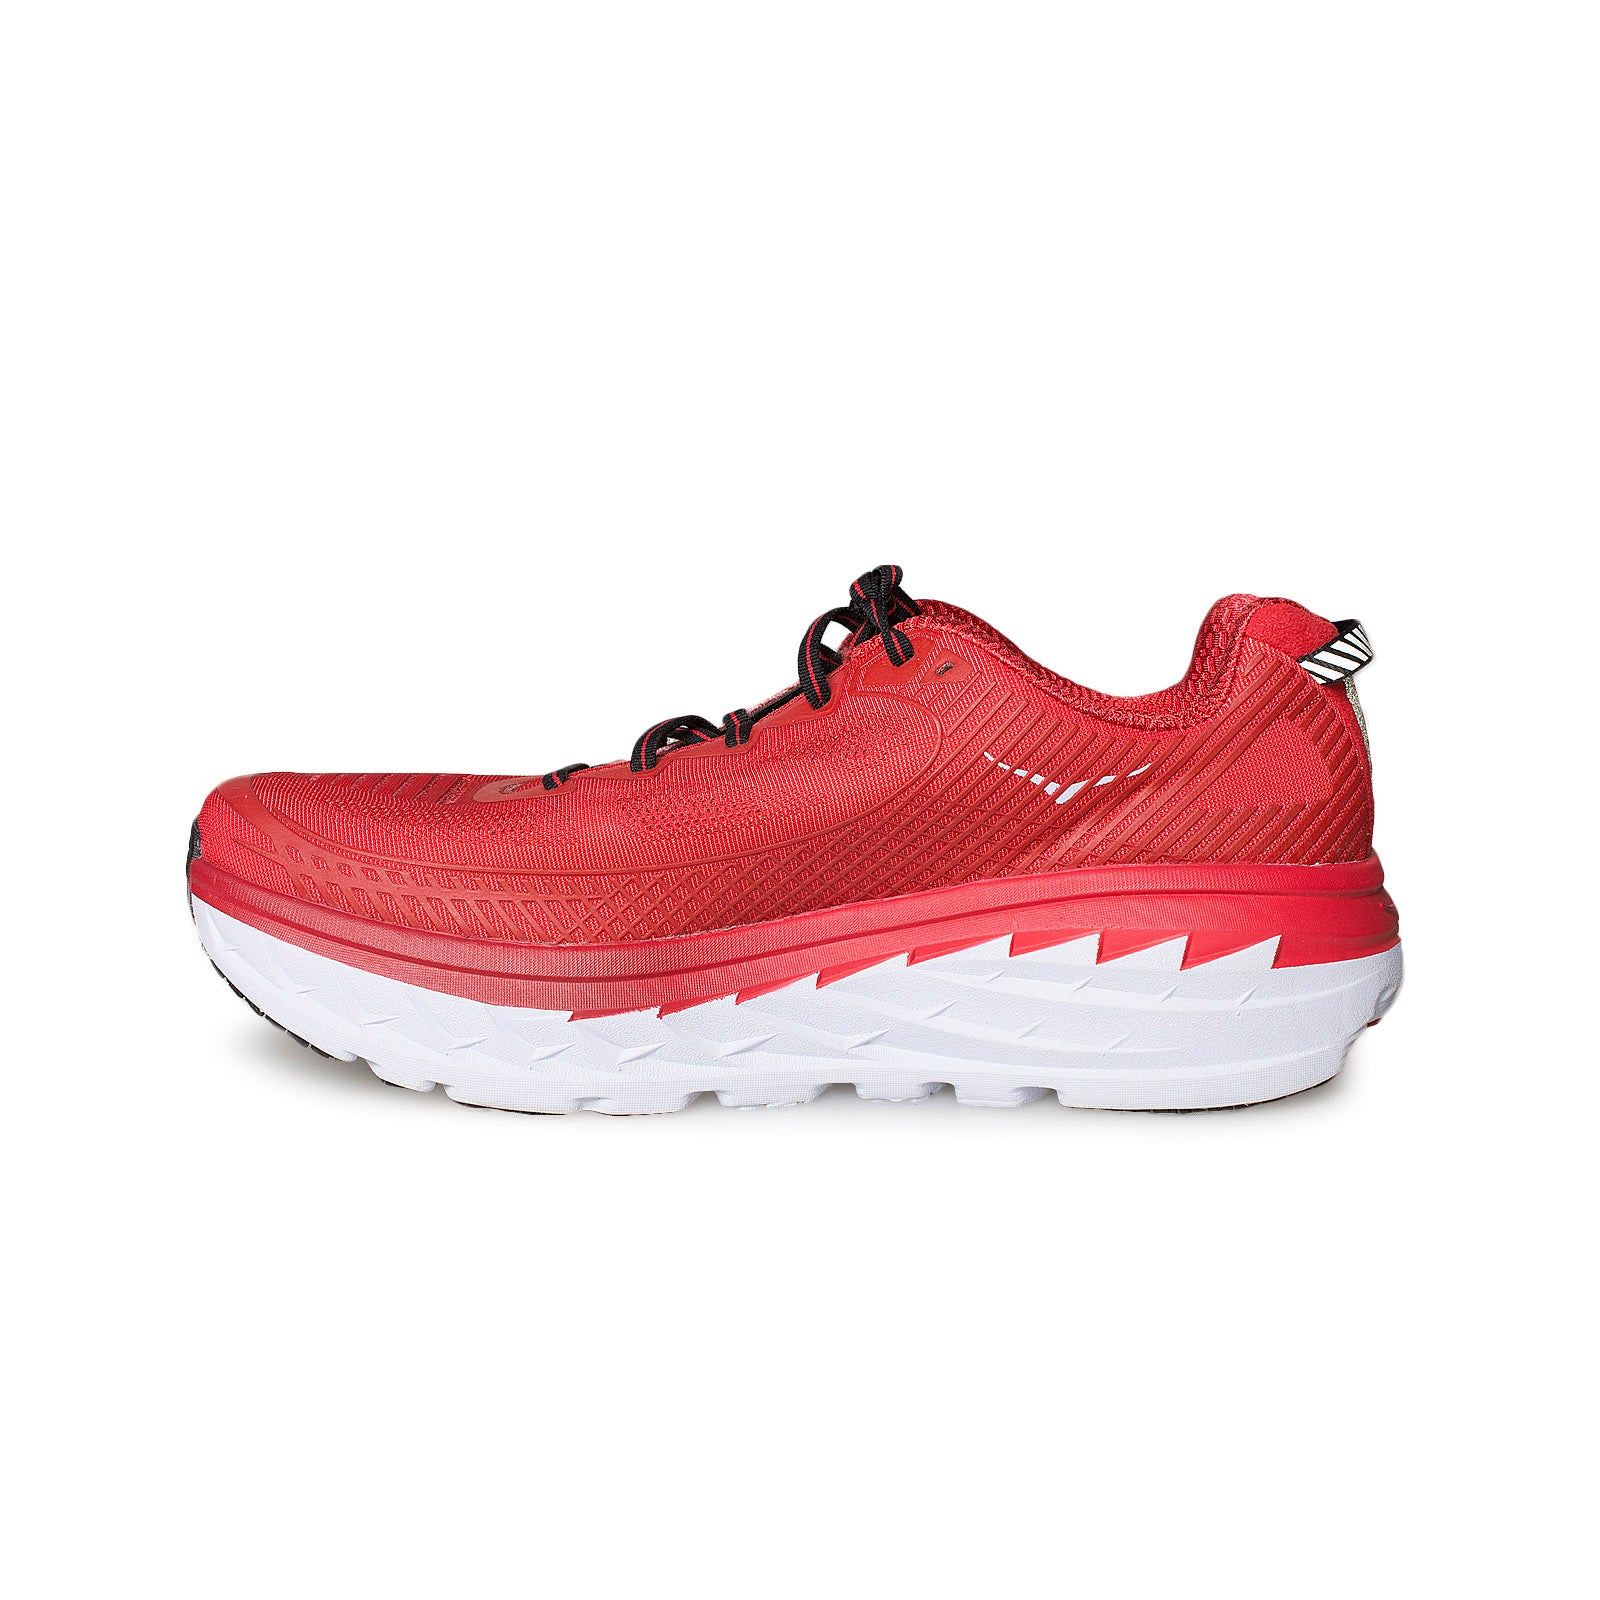 Hoka One One Bondi 5 High Risk Red / Haute Red Running Shoes 